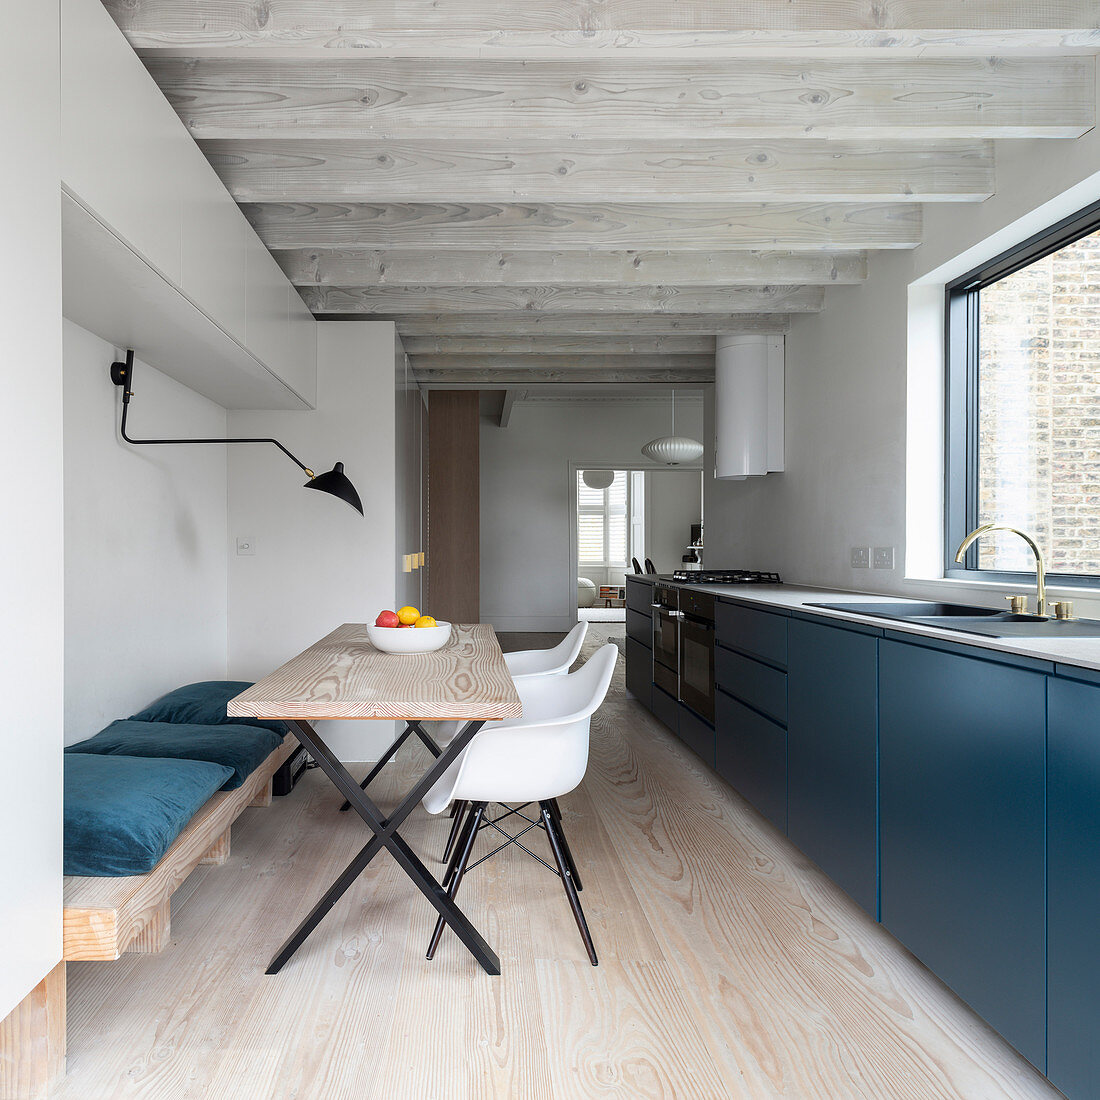 Moderne offene Küche mit blauen Fronten, Esstisch und Balkendecke